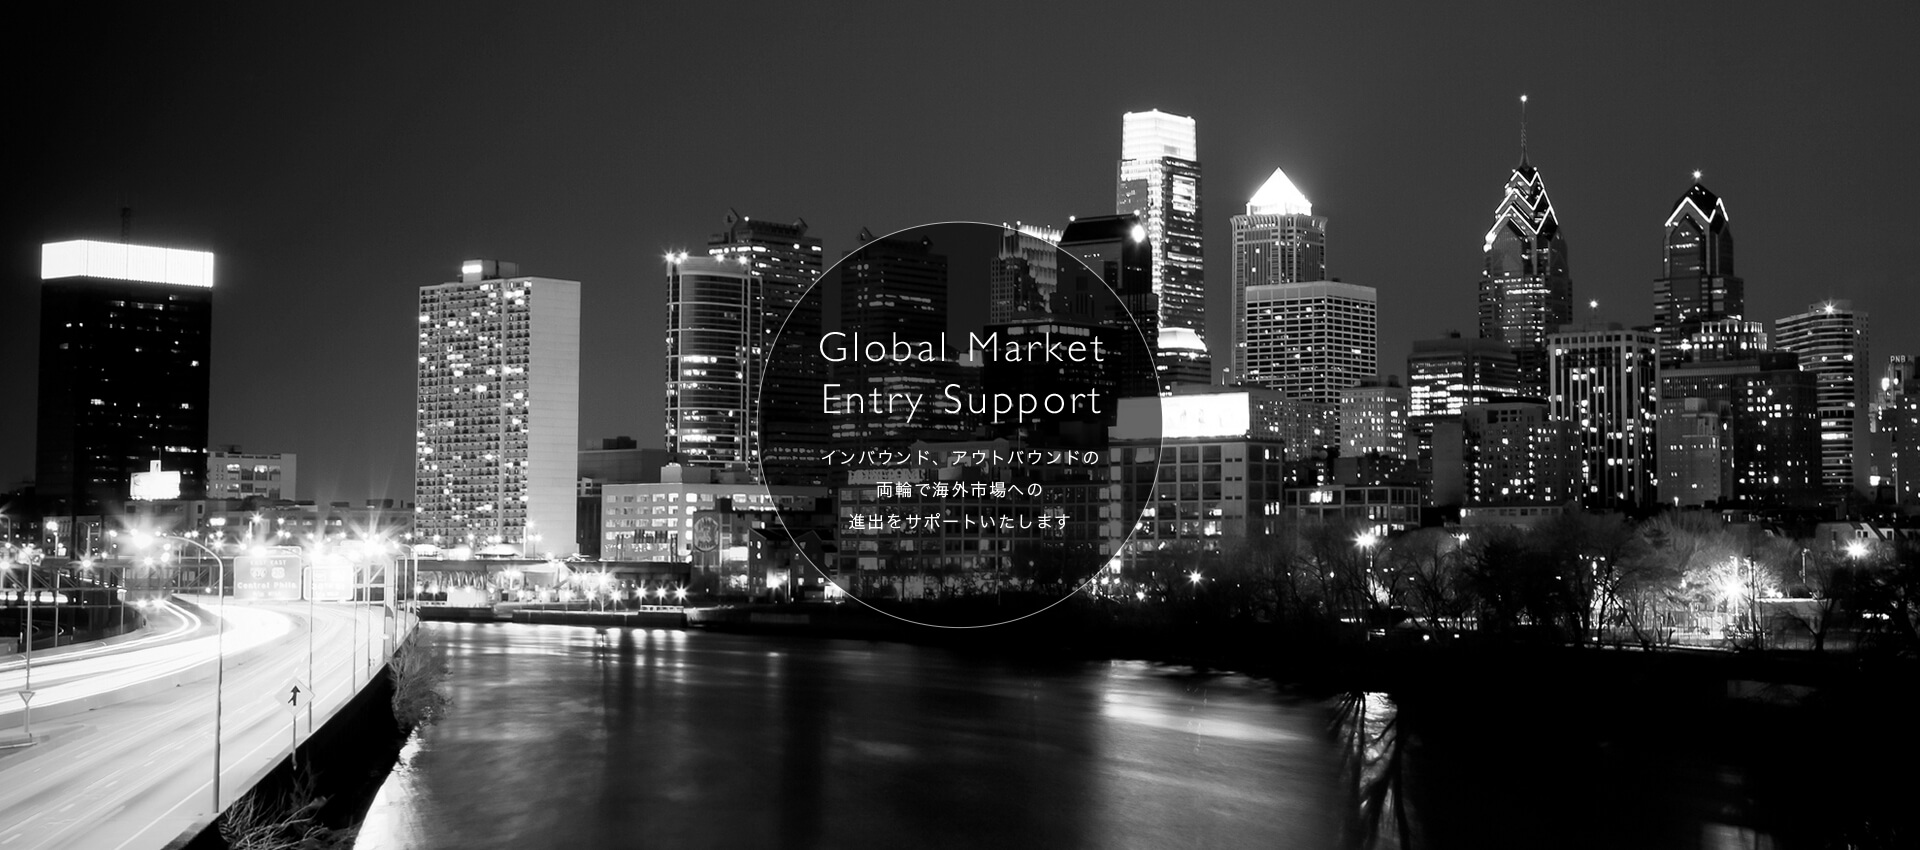 Global Market Entry Support　インバウンド、アウトバウンドの両輪で海外市場への進出をサポートいたします